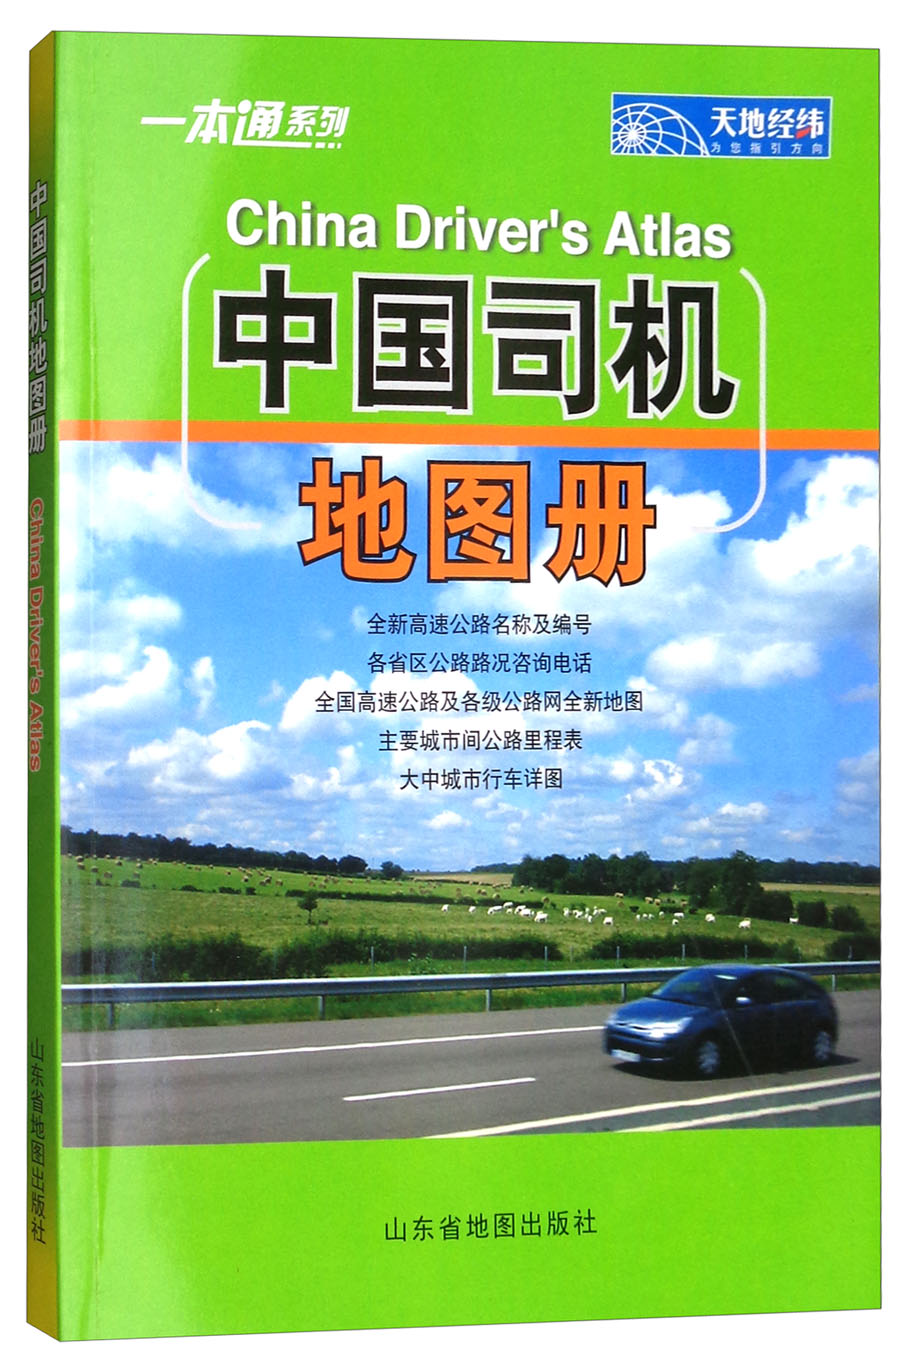 2018年中国司机地图册 kindle格式下载